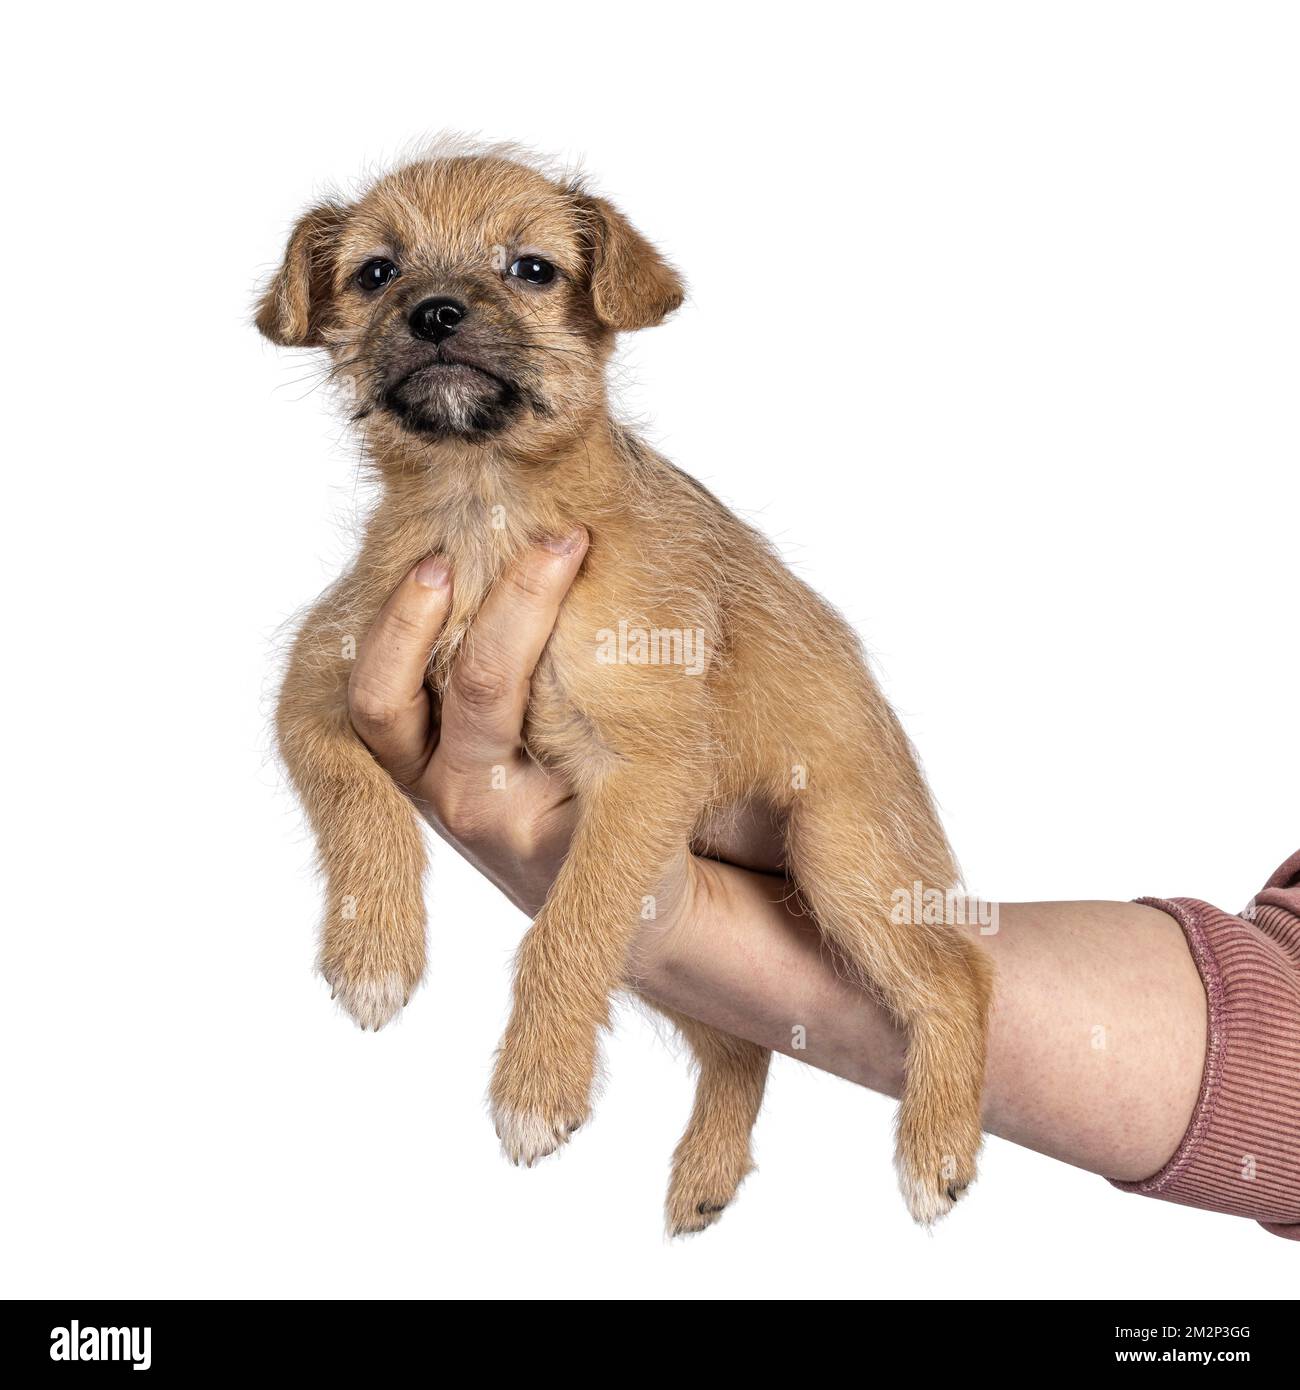 Süßer, hellbrauner Hund mit verirrten Haaren, der an menschlichen Armen und Händen hängt. Ich schaue in die Kamera. Isoliert auf weißem Hintergrund. Stockfoto